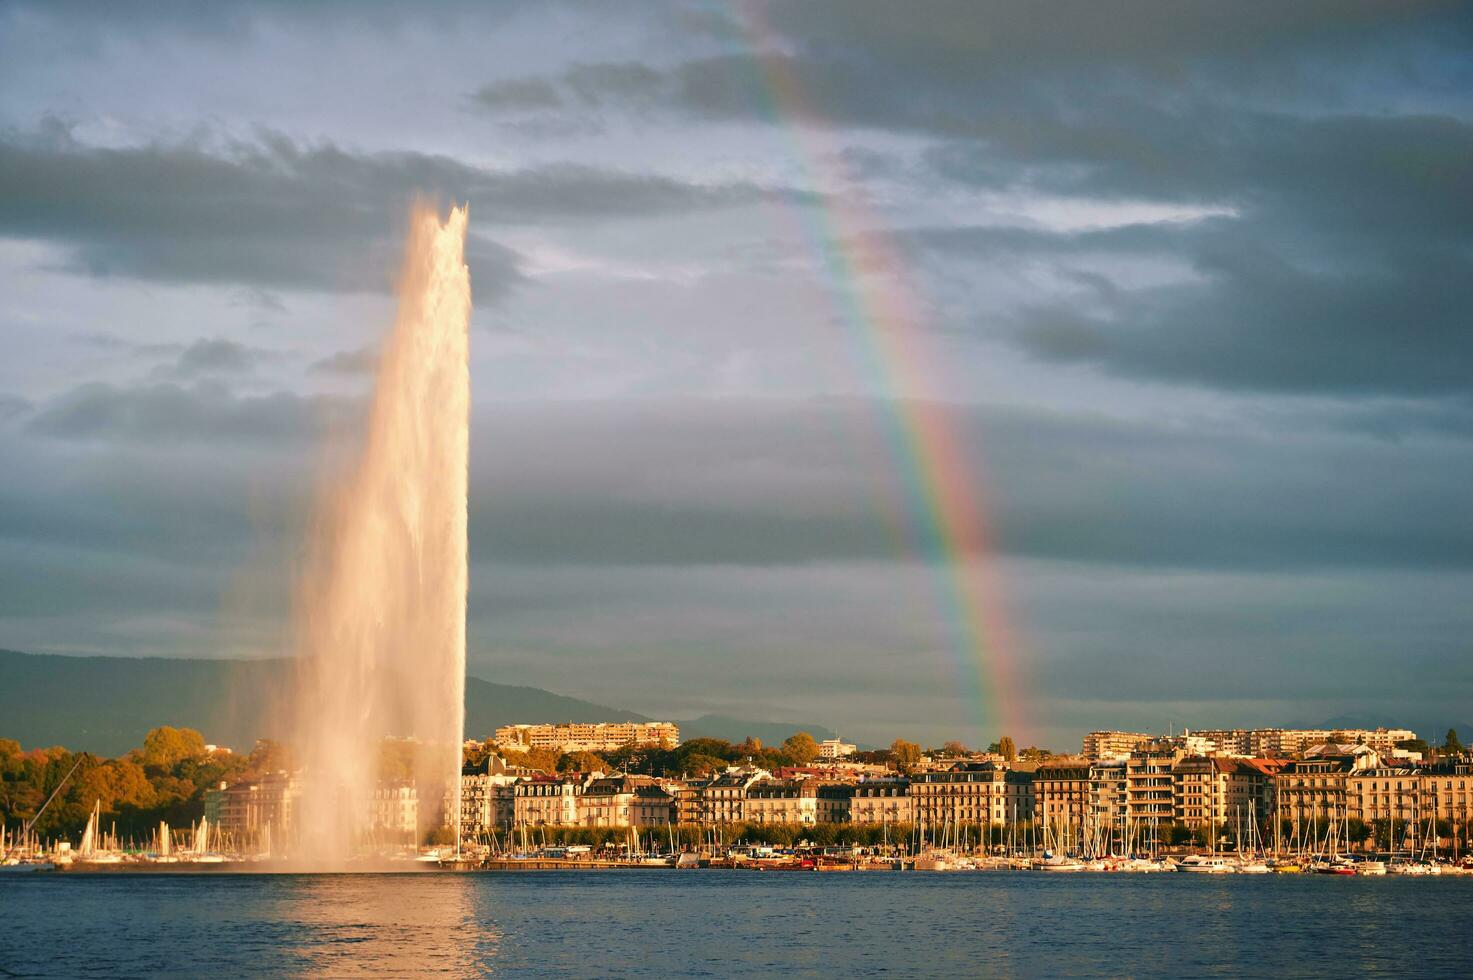 ciudad paisaje de Ginebra céntrico y lago, Suiza, brillante arco iris terminado famoso 140 metros chorro de agua fuente foto